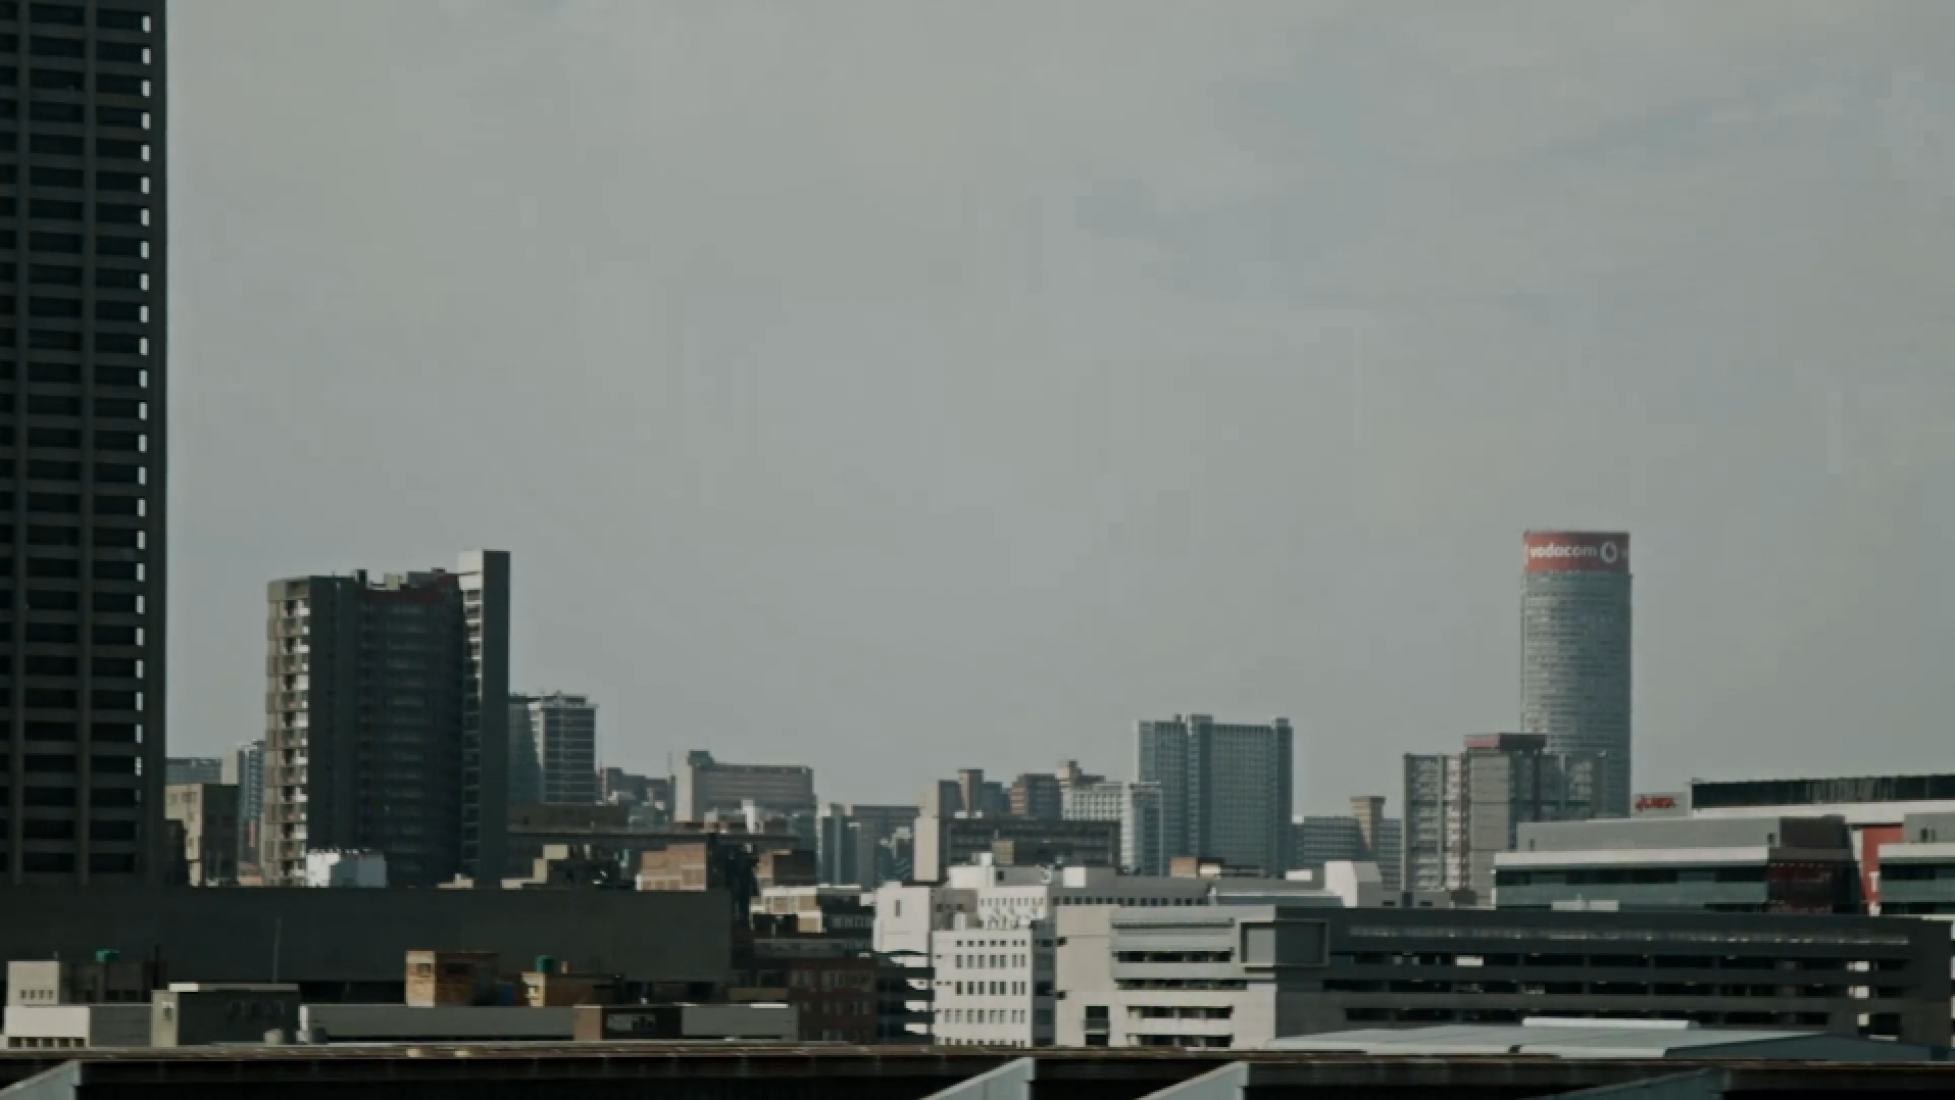 Vista desde el exterior. Ponte Tower película por Philip Bloom.